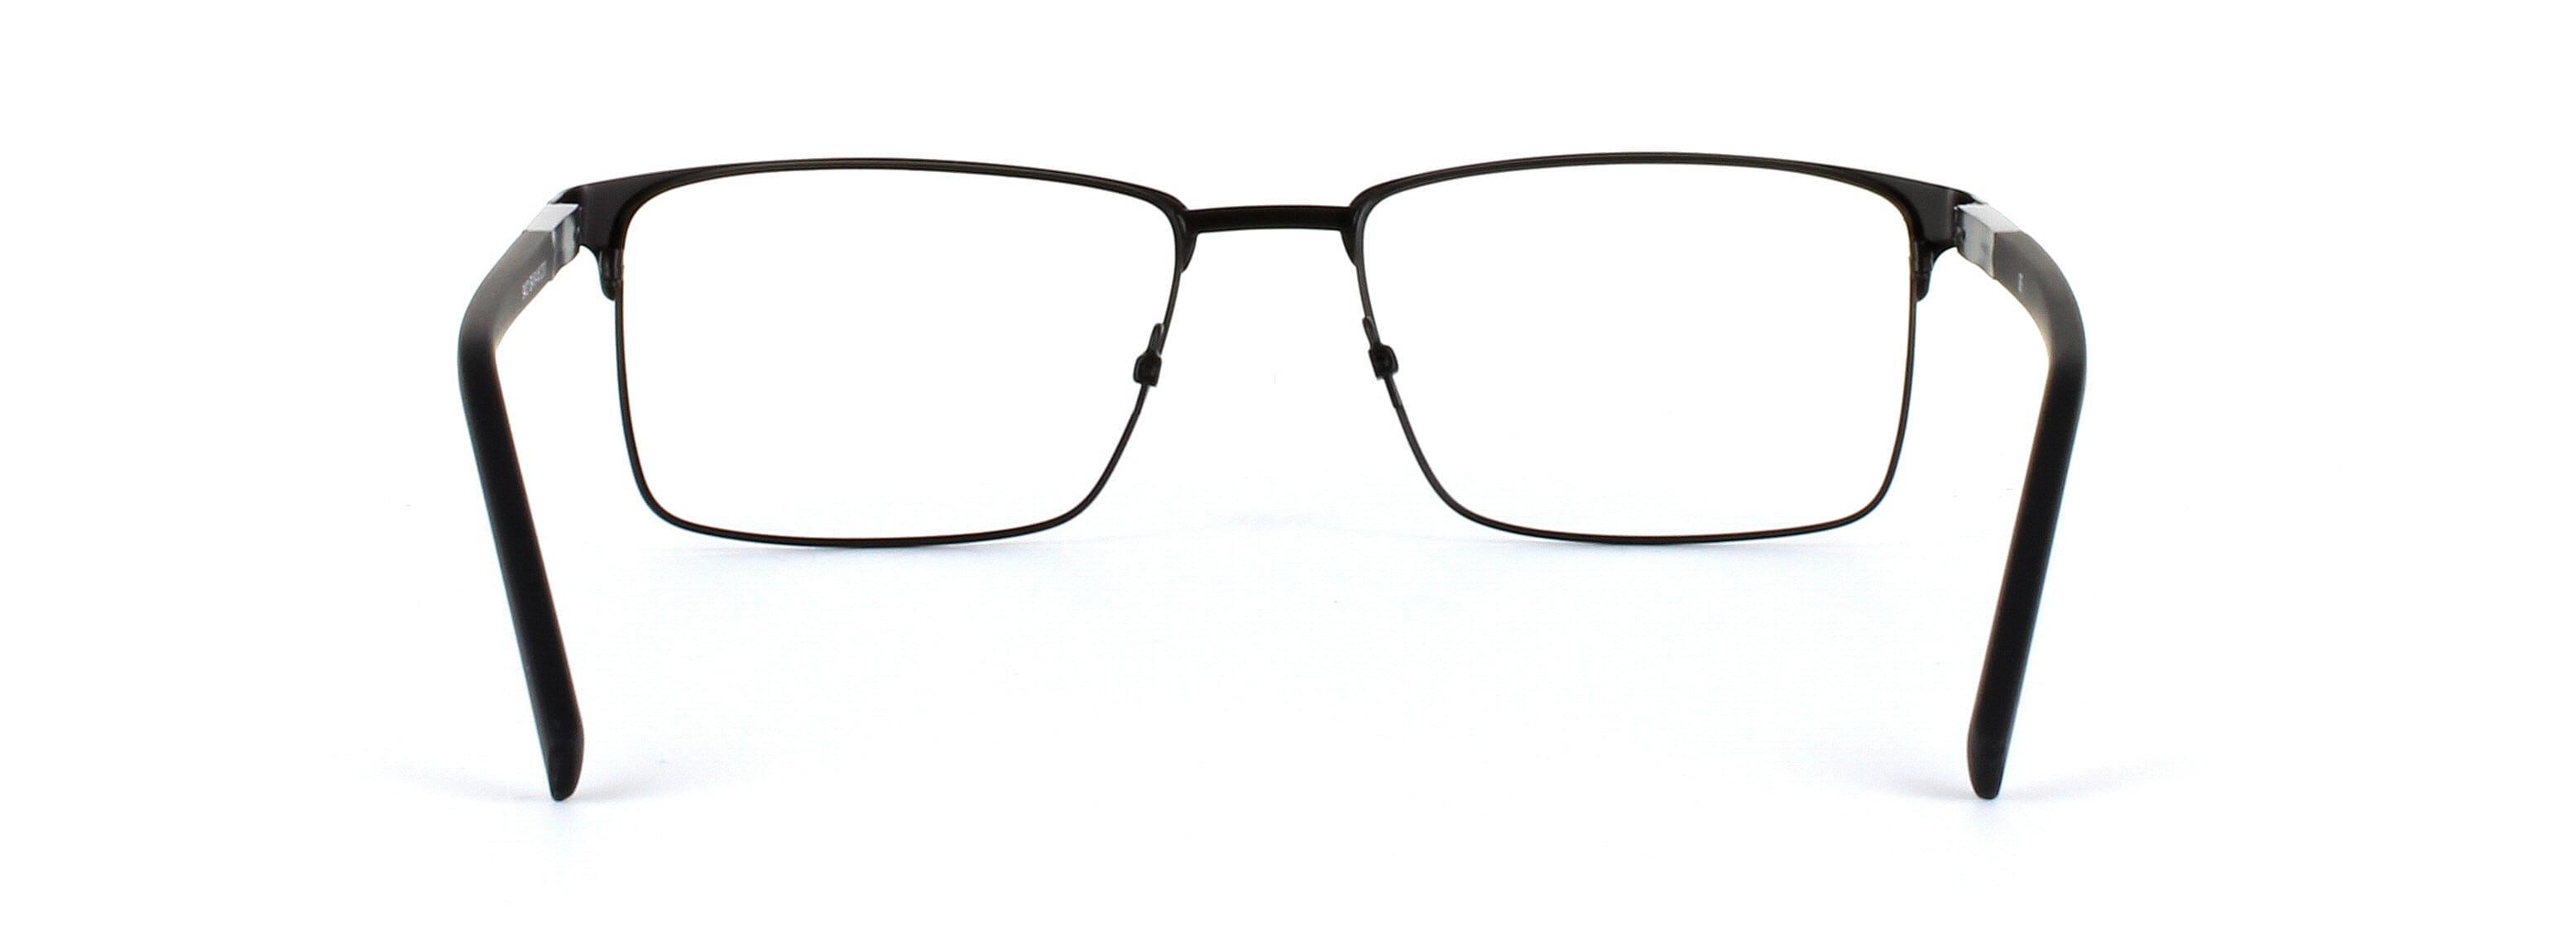 Natark Black Full Rim Metal Glasses - Image View 3